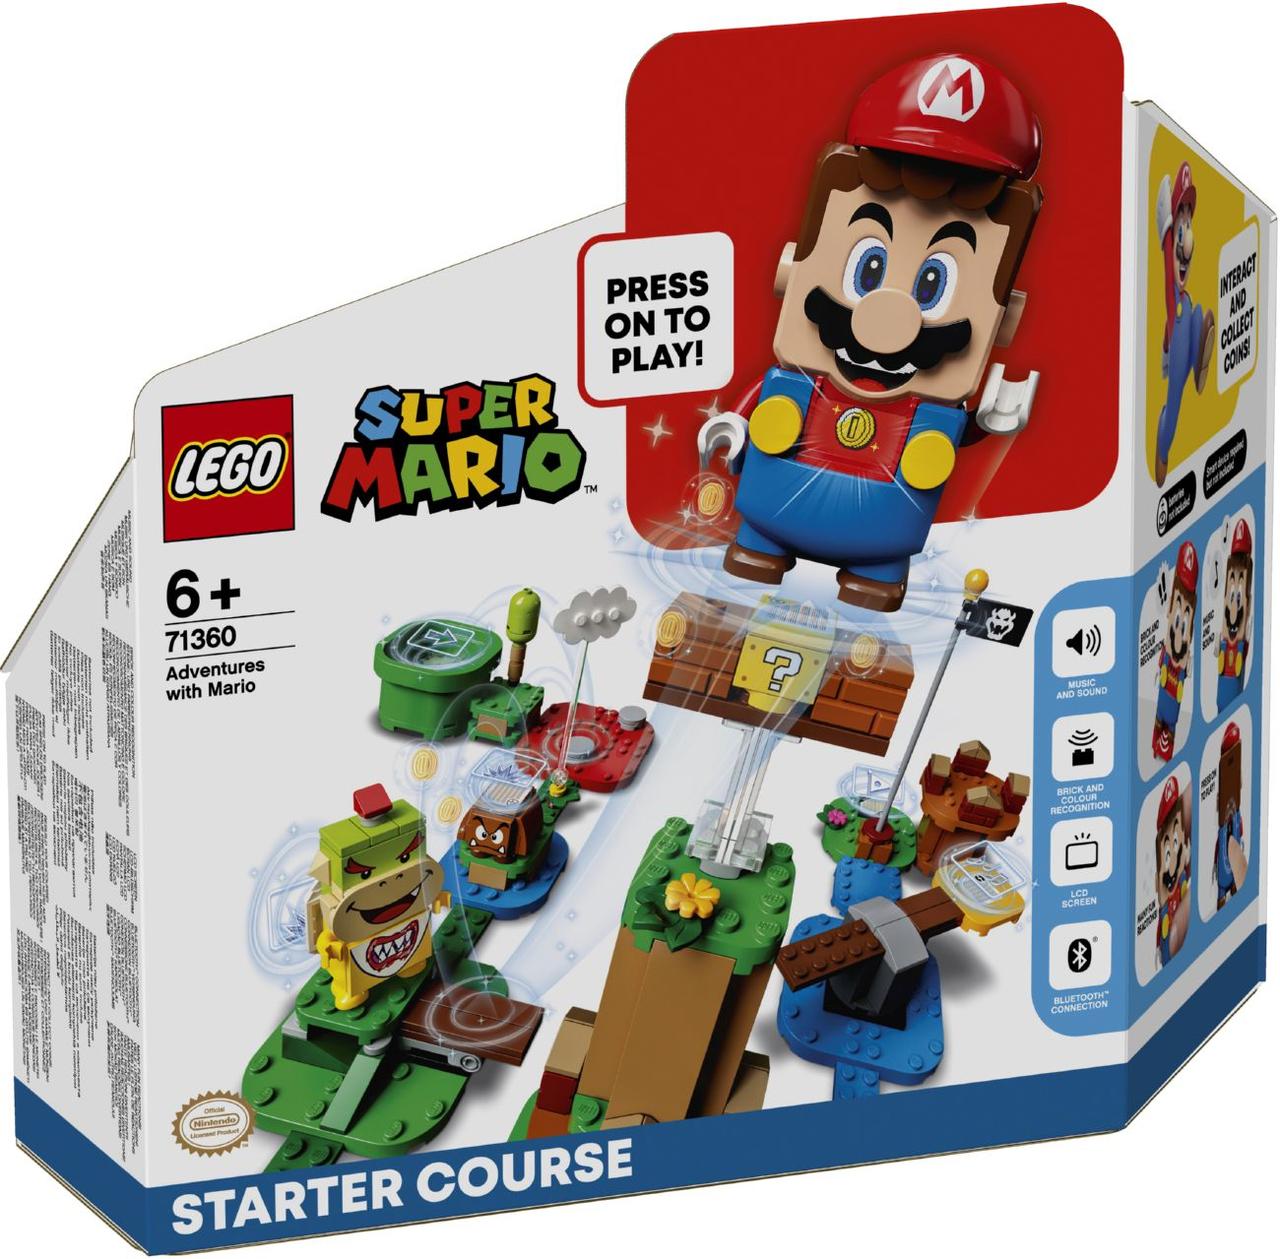 Lego Super Mario Приключения вместе с Марио. Стартовый набор Лего 7136